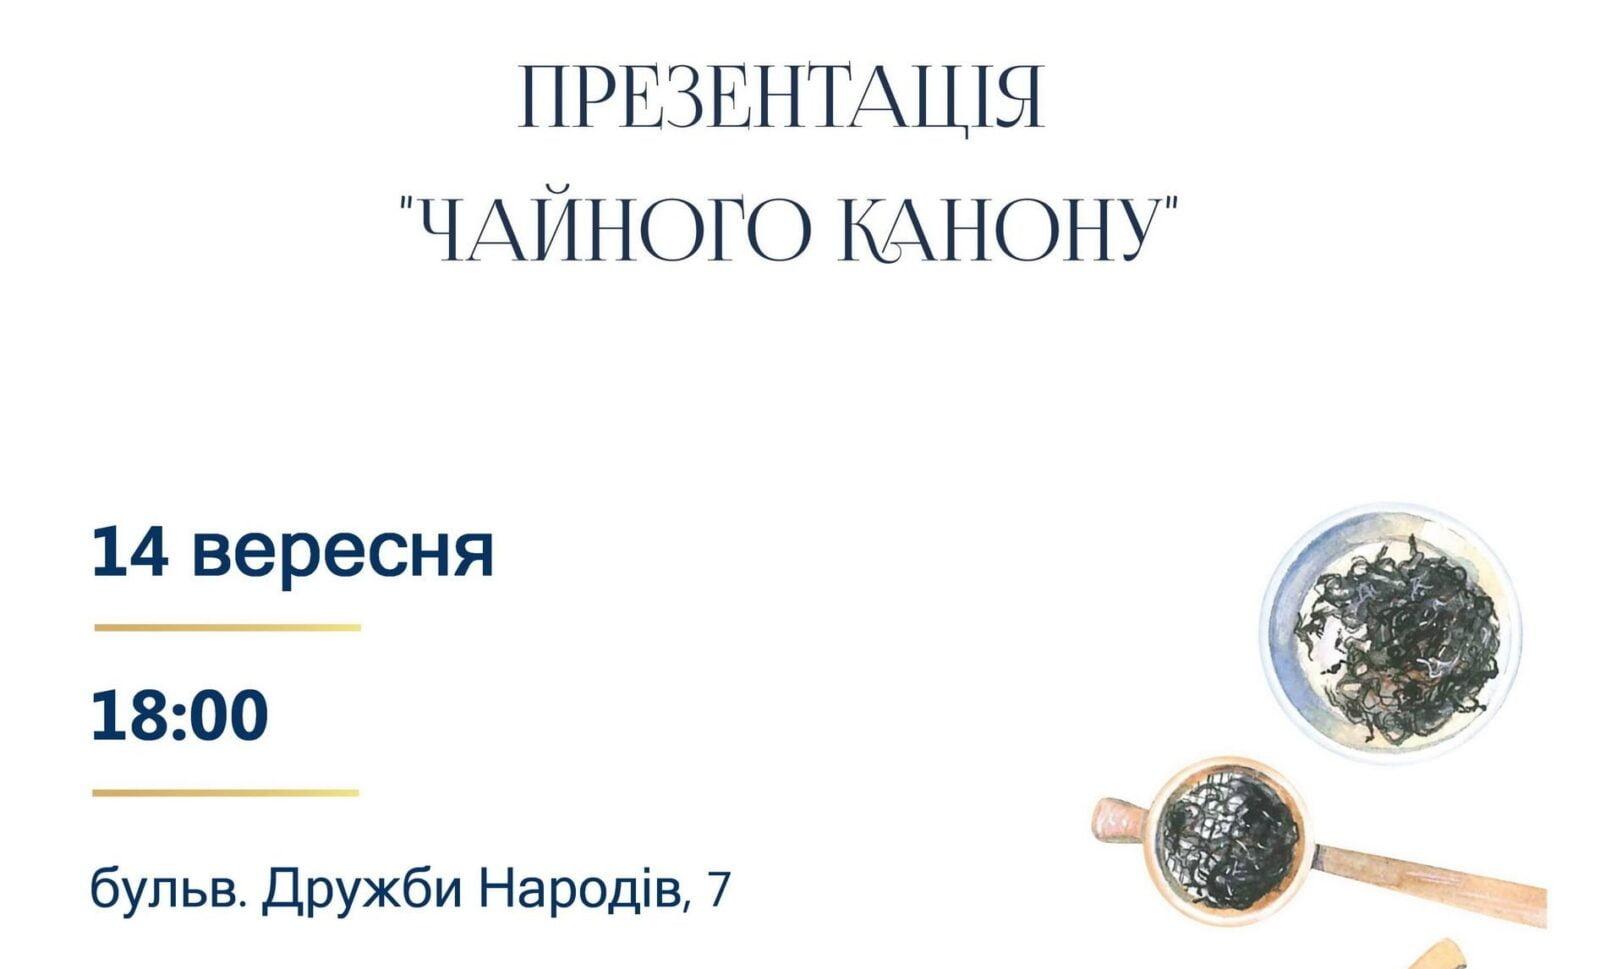 You are currently viewing Презентация первого украинского издания “Чайный Канон” Лу Юя